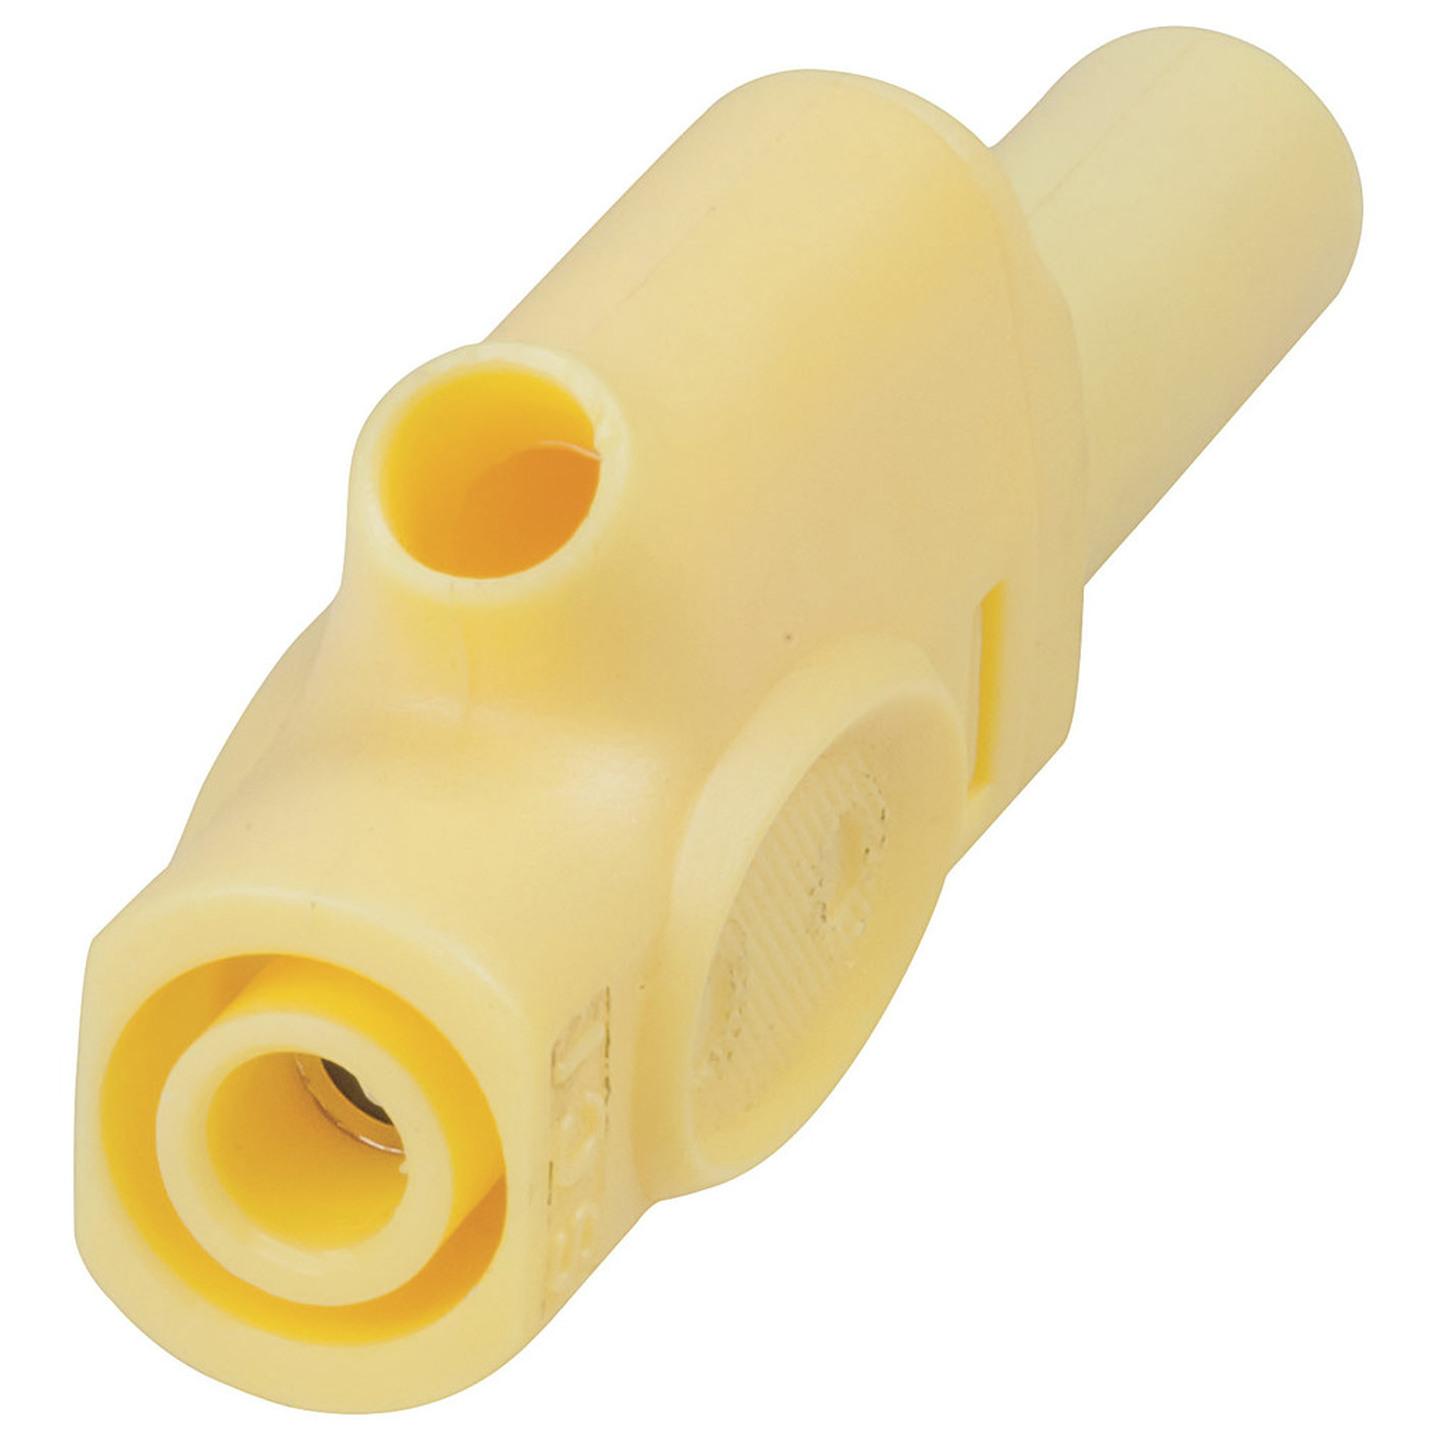 4mm Insulated Banana Plugs Yellow